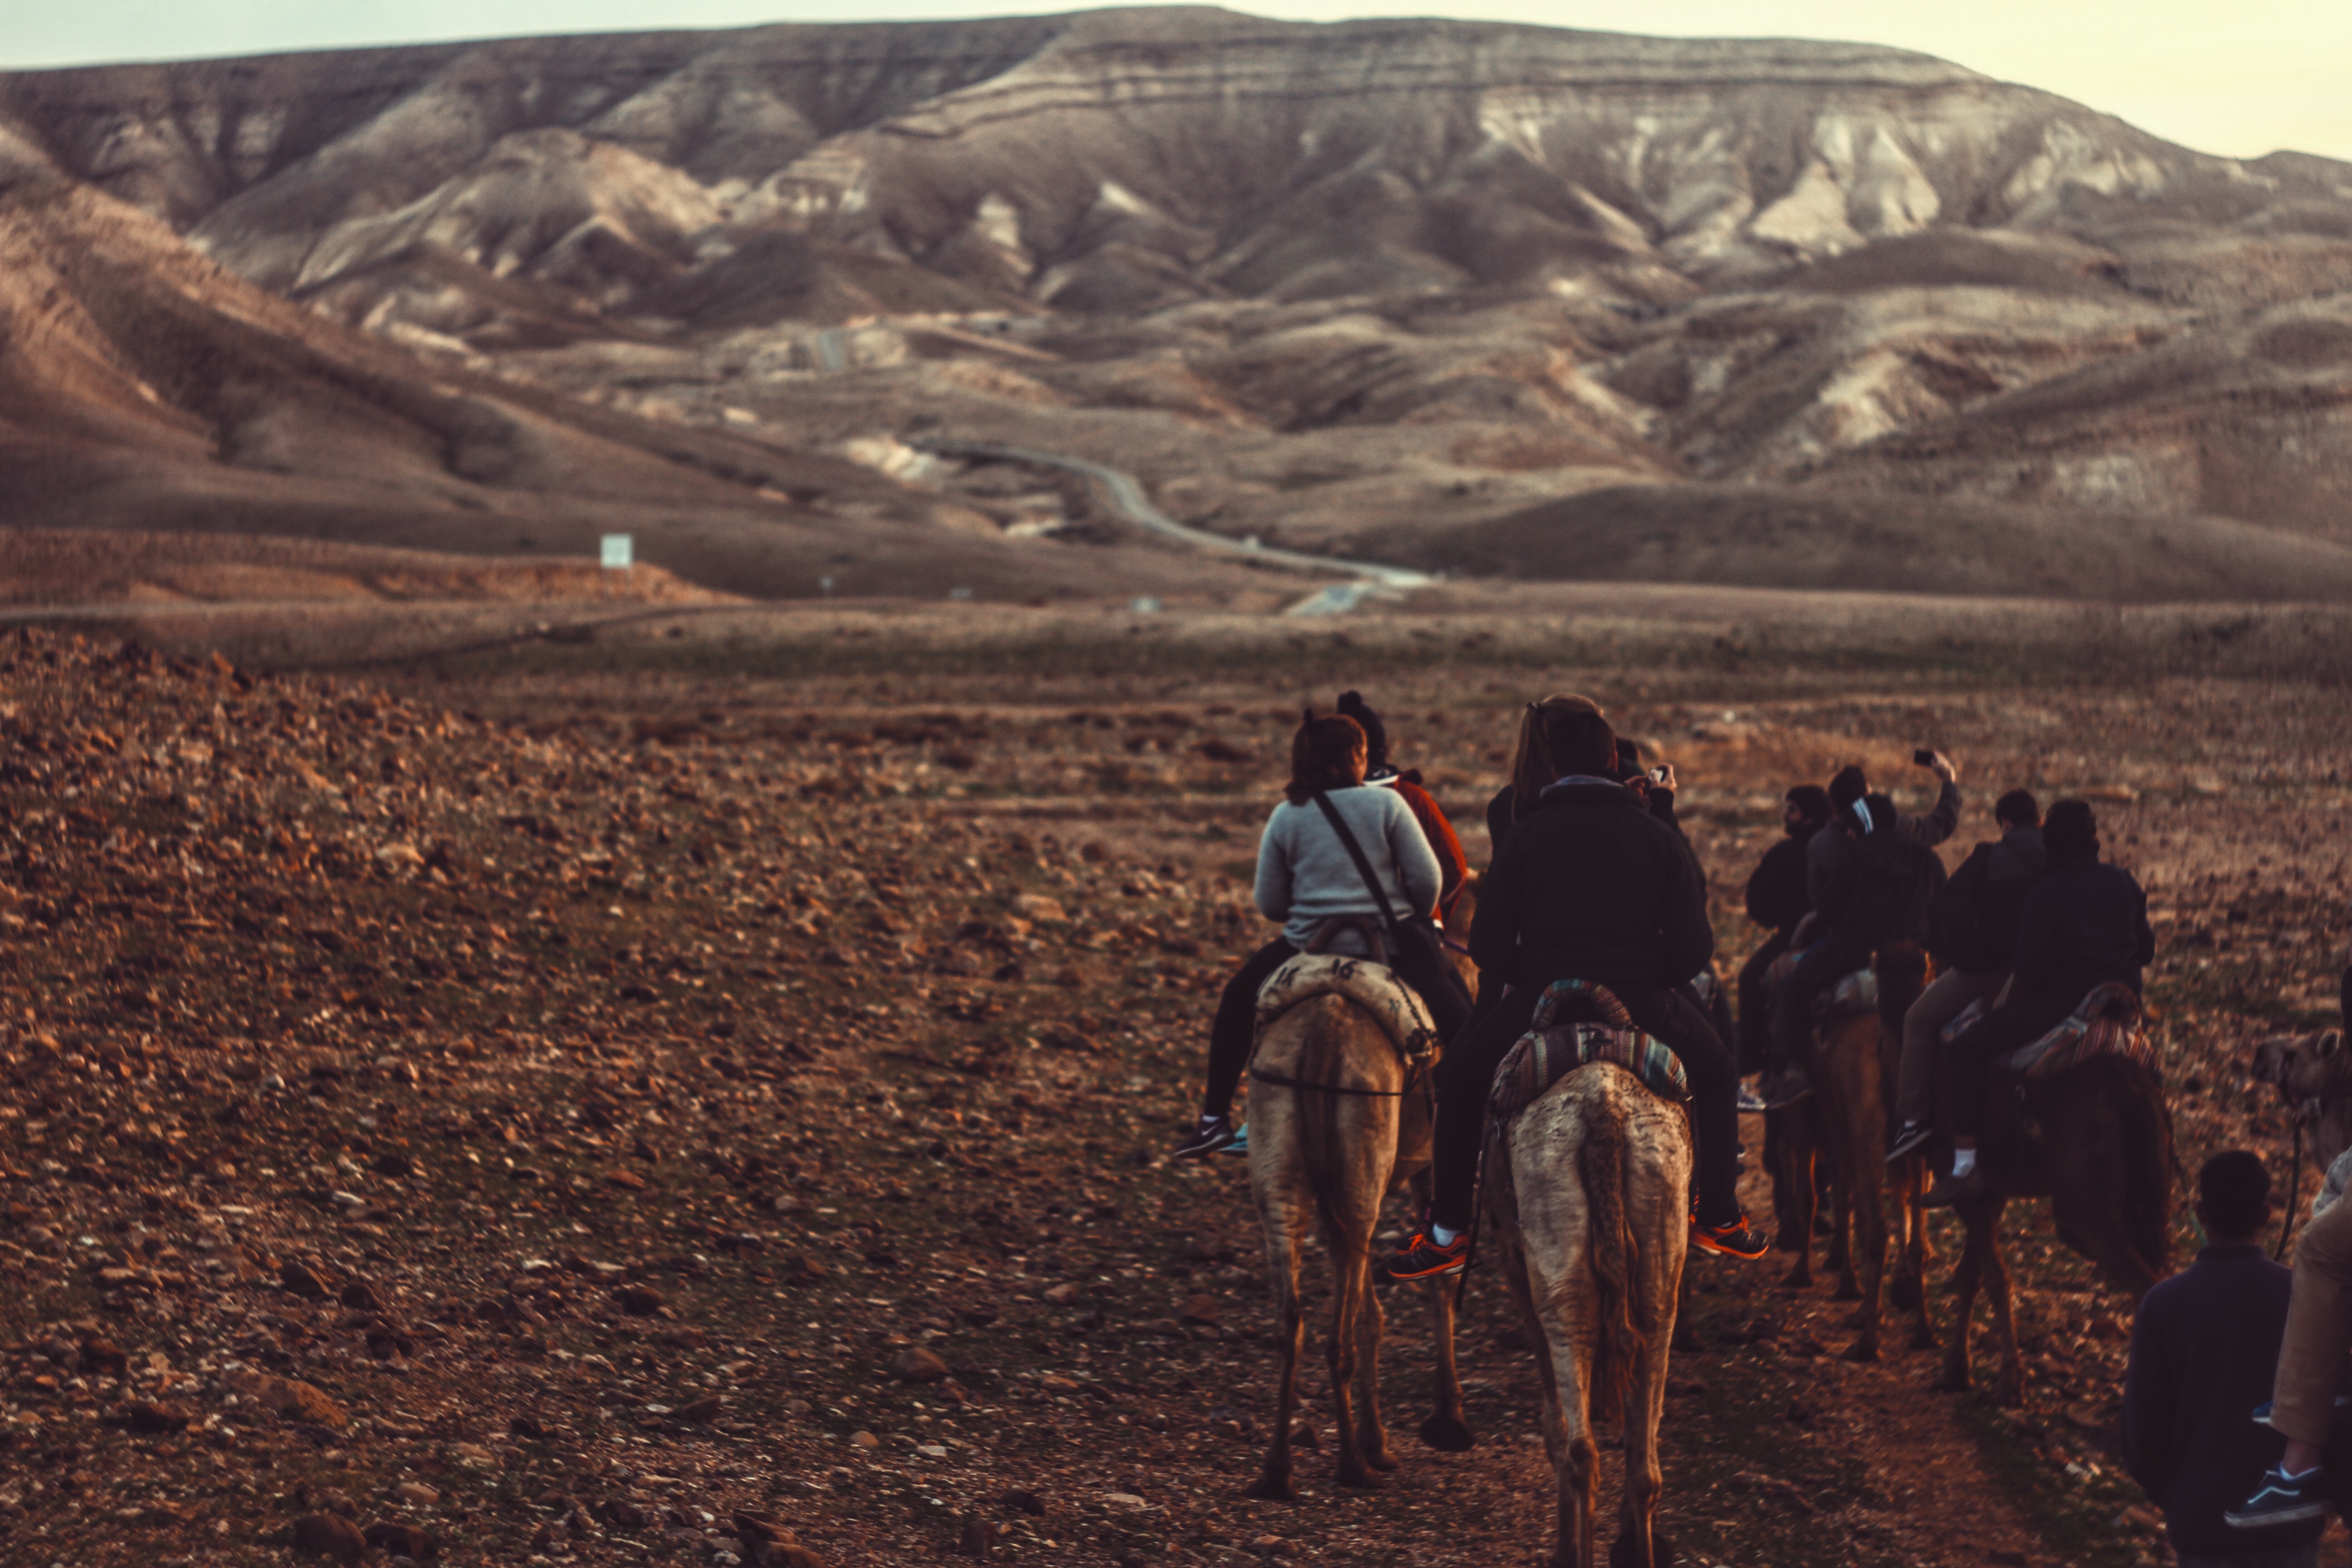 Negev tour, rocky desert on horseback, Israel